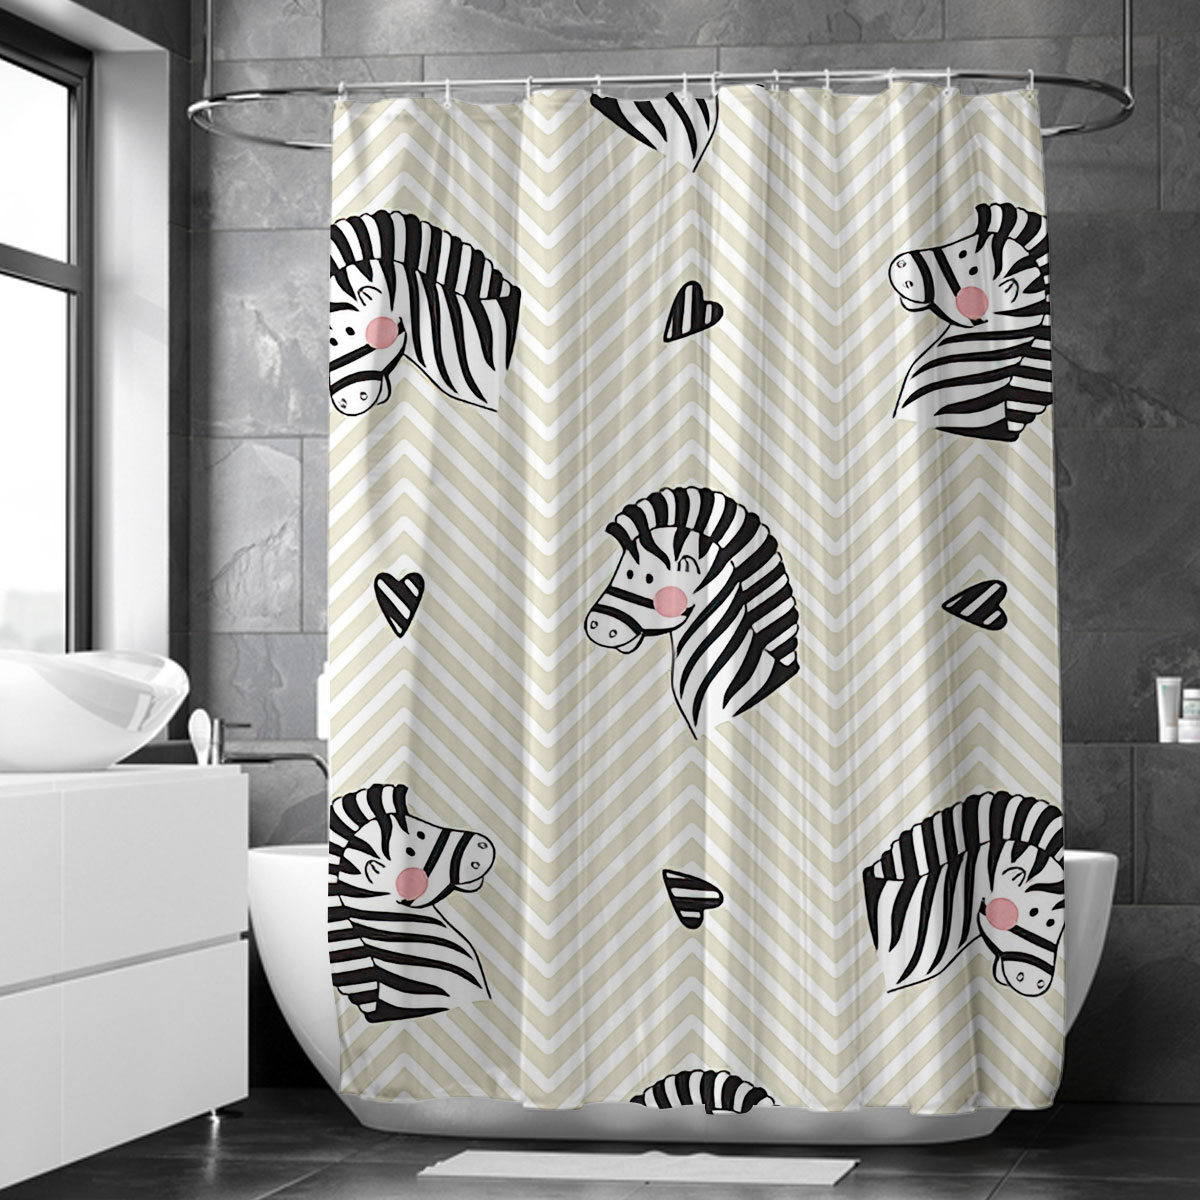 Zebra Little Heart Shower Curtain 6